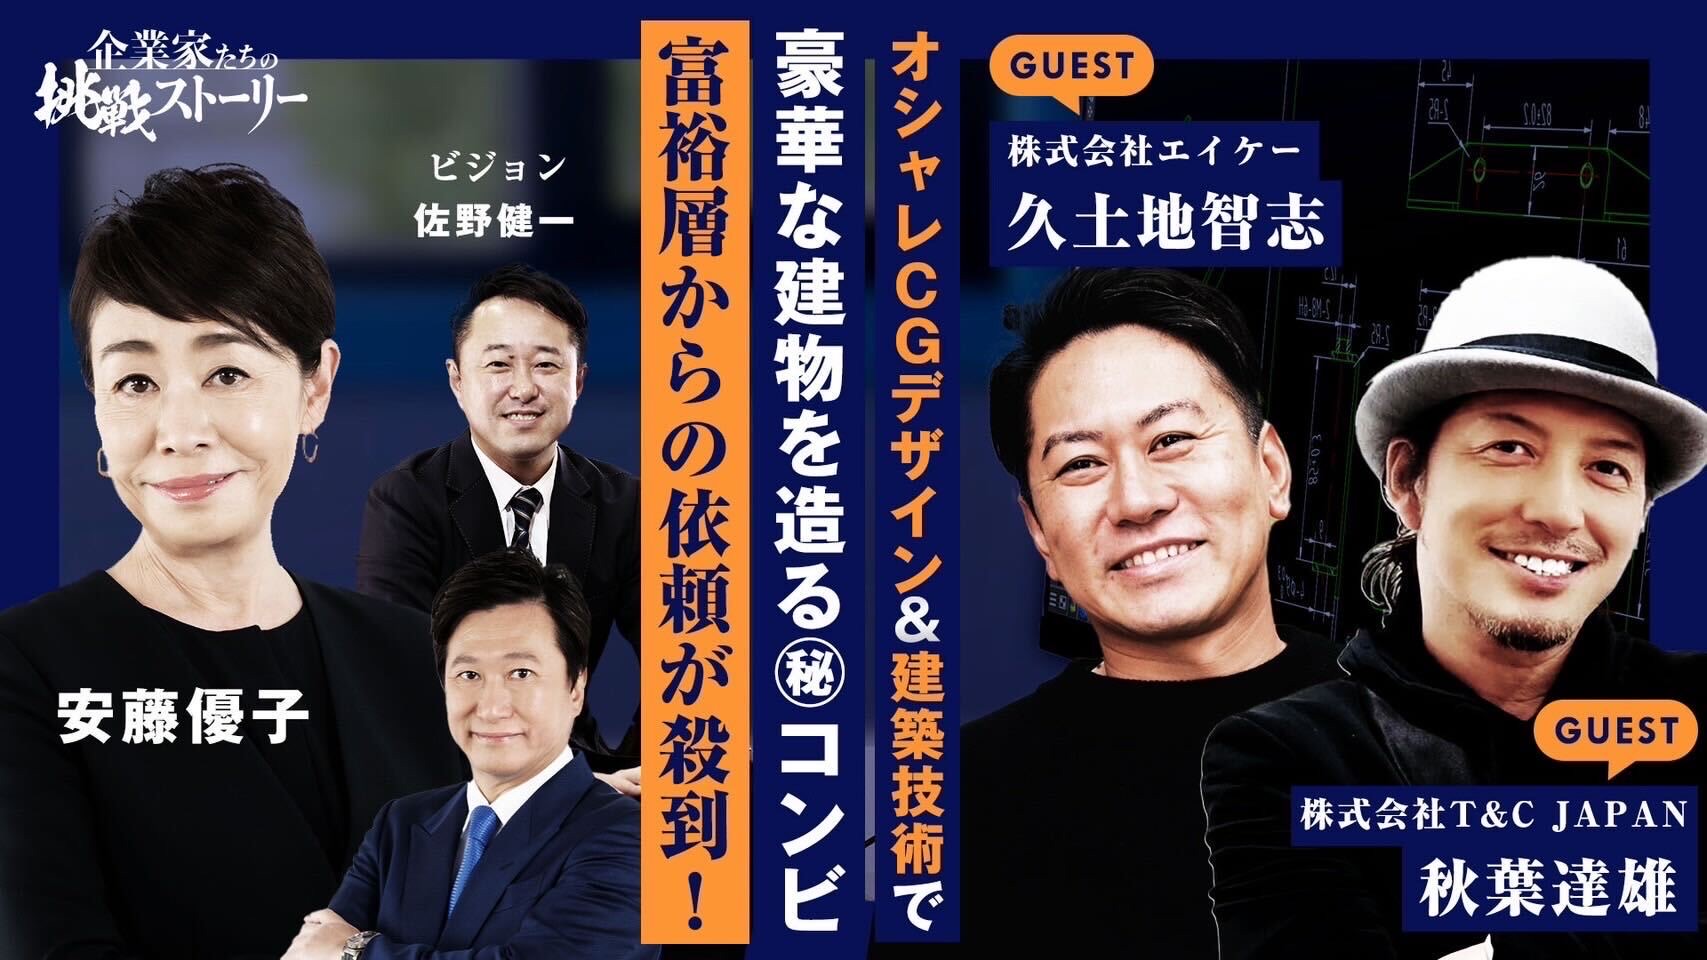 11月27日 TOKYO MX TV にて放送される『企業家たちの挑戦ストーリー